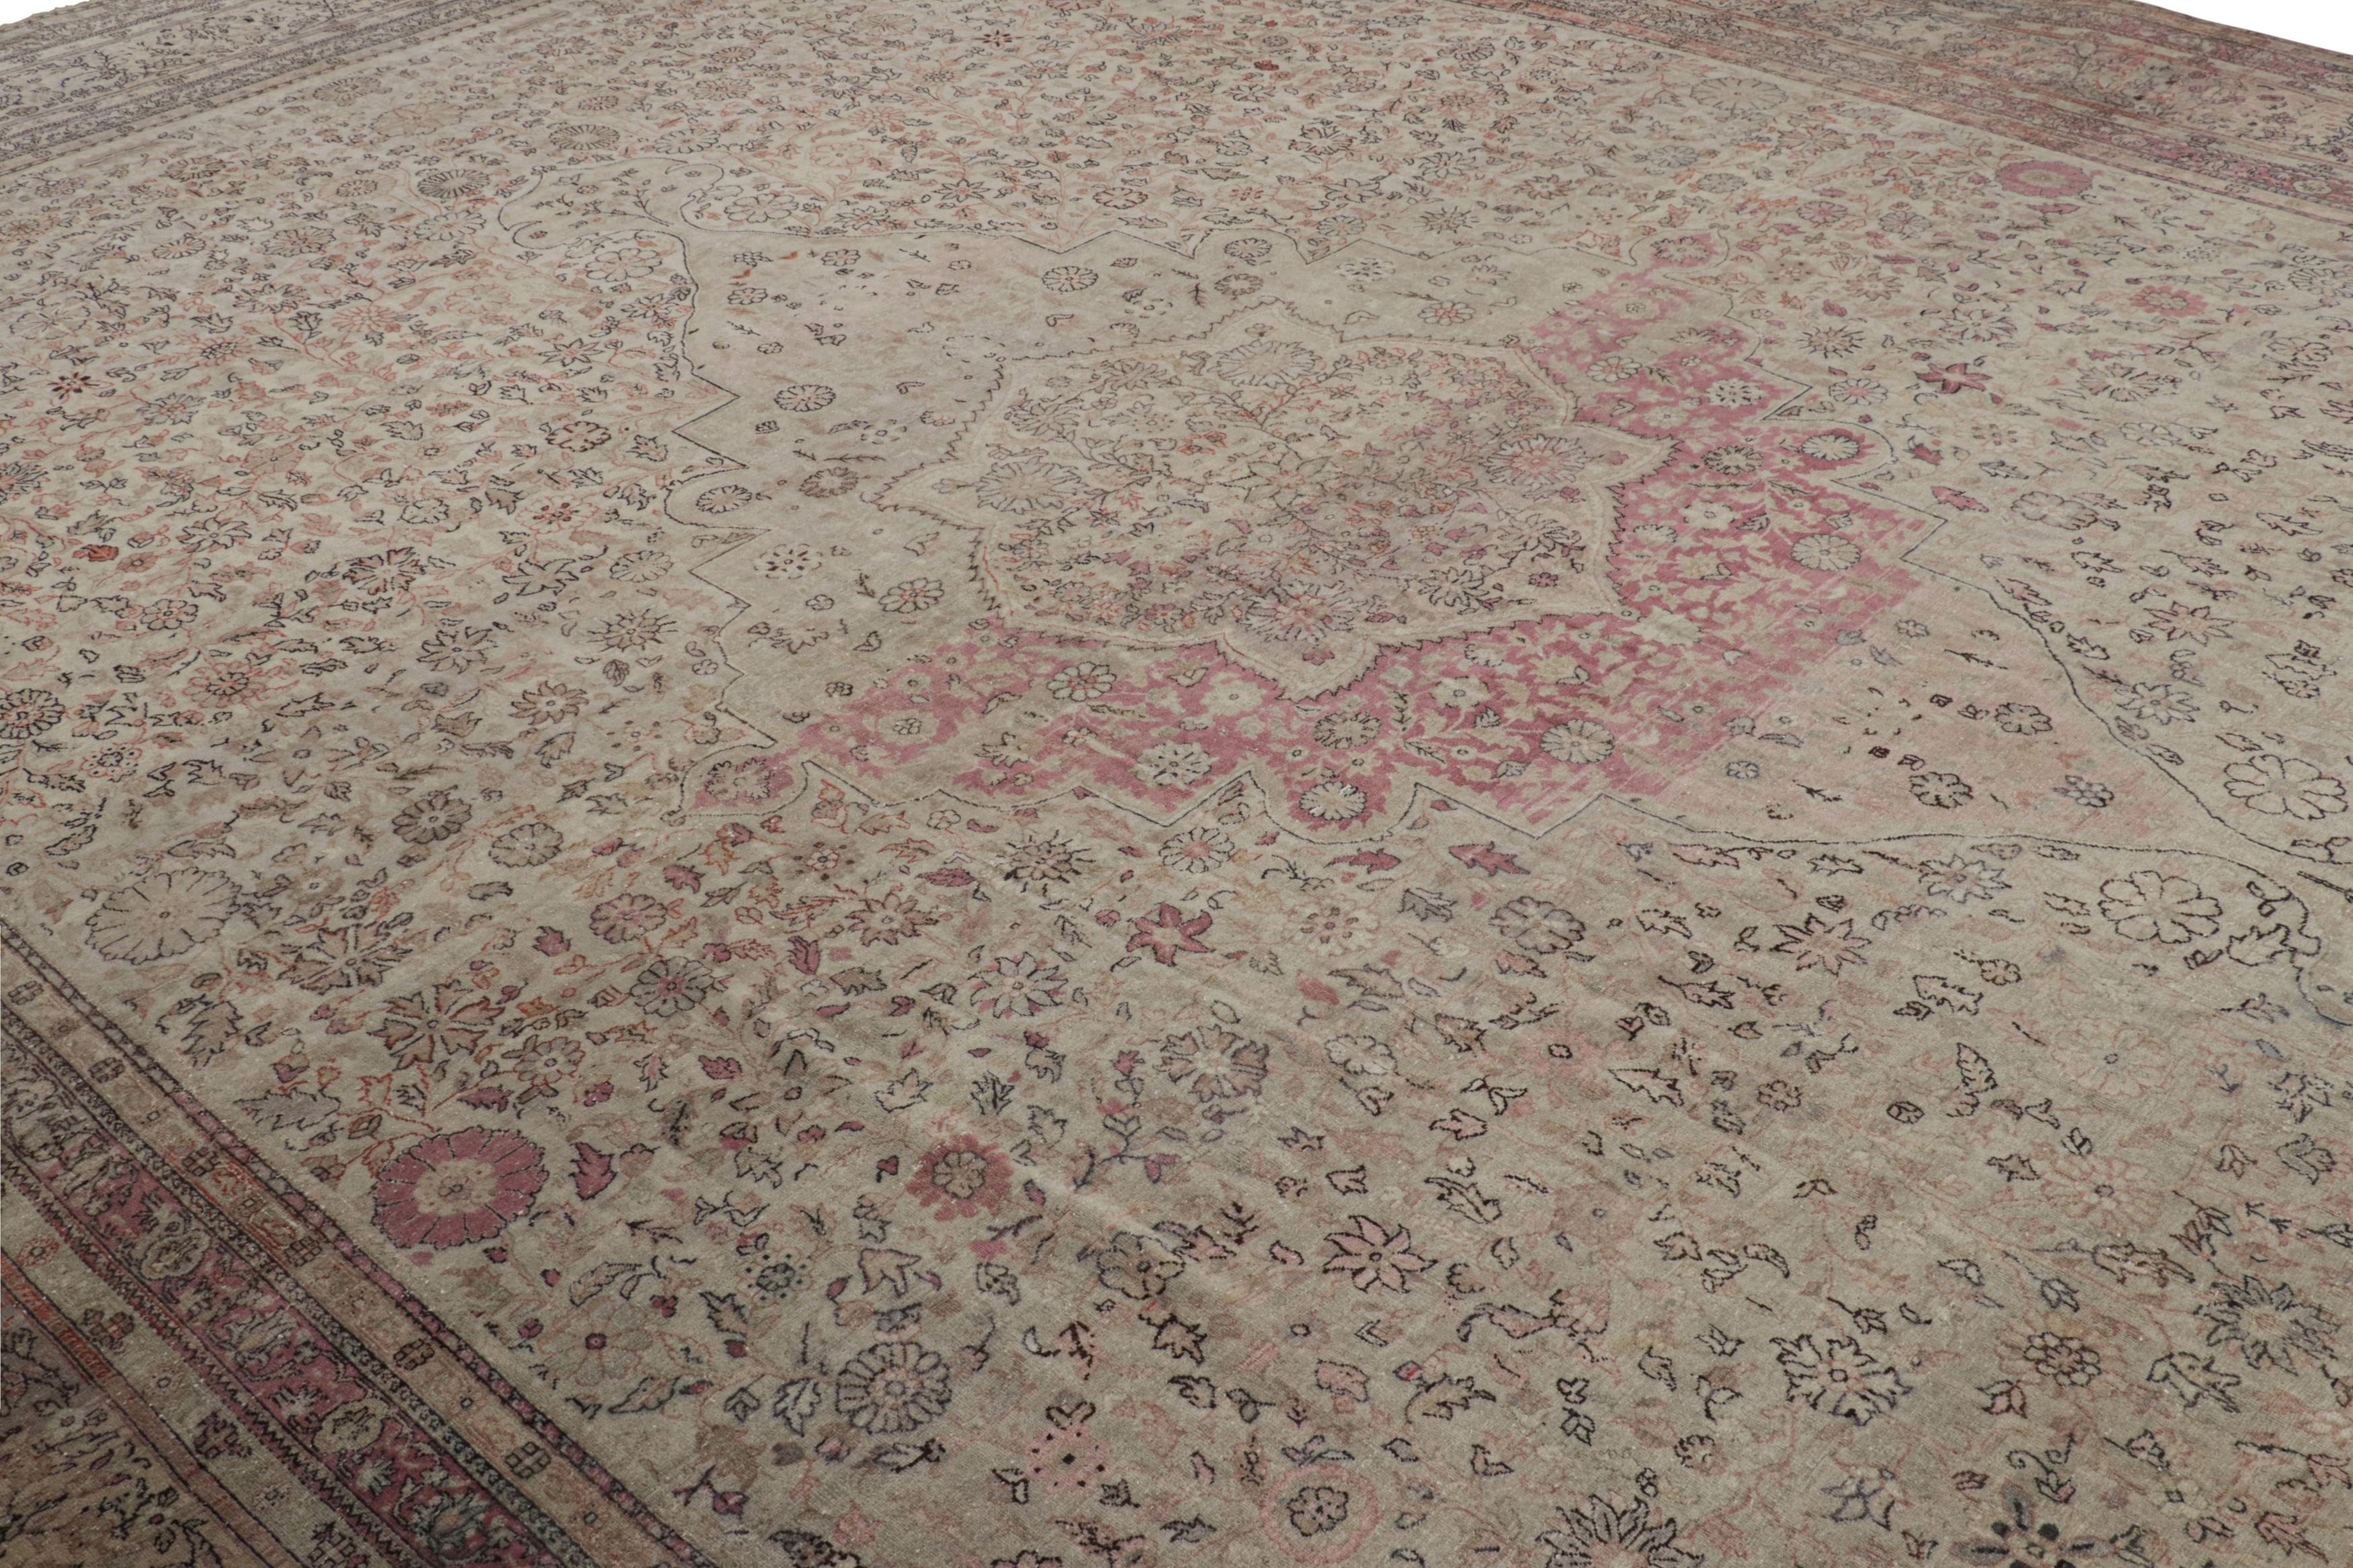 Ce tapis antique 13x20 de Sivas est un tapis surdimensionné extrêmement rare pour l'époque. Il a été fabriqué en Turquie vers 1920-1930 avec de la laine nouée à la main. 

Sur le Design :

Les tons beige-brun soulignent un motif floral élaboré et